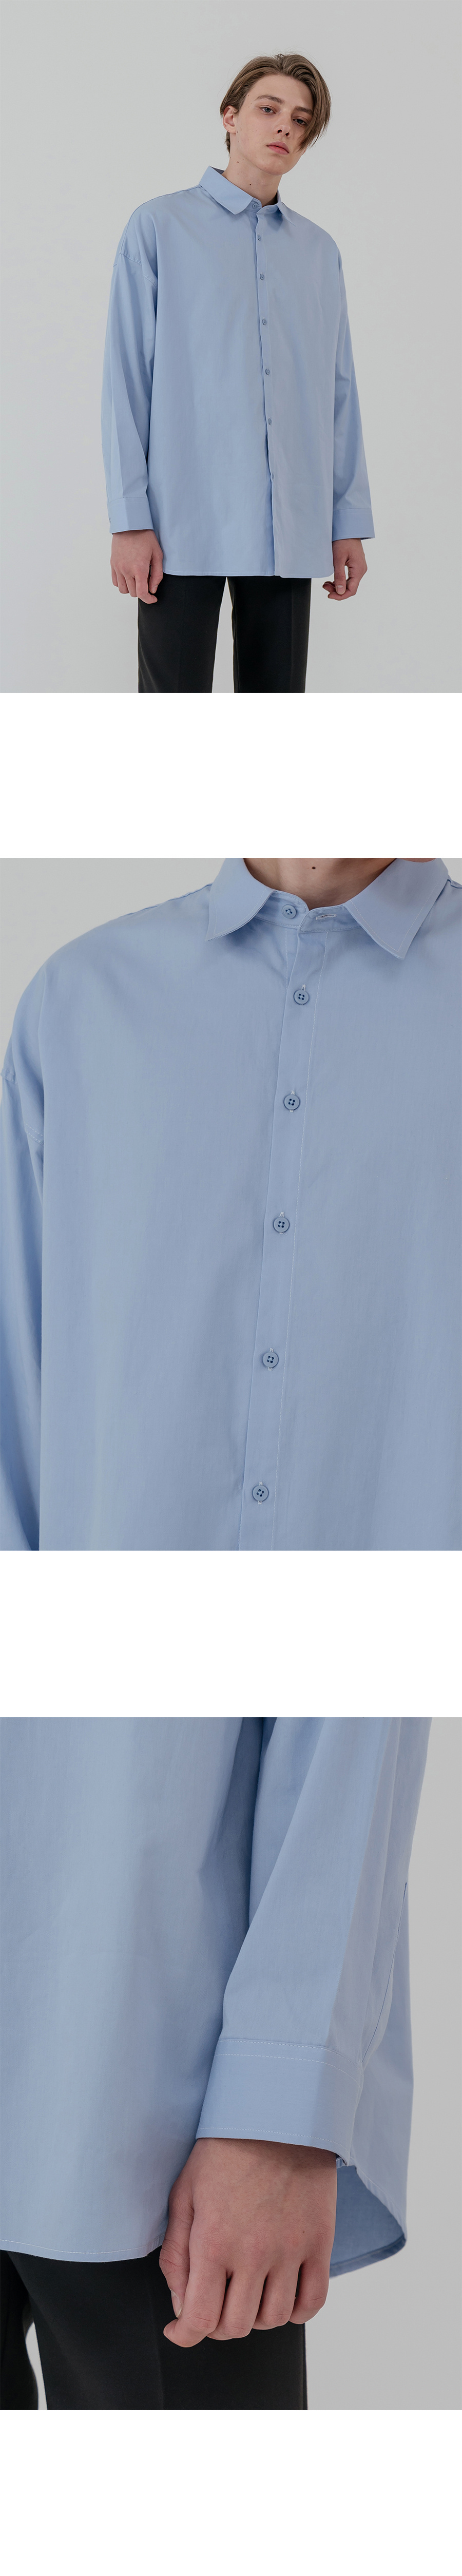 씨오큐(COQ) Overfit minimal color shirt_sky blue